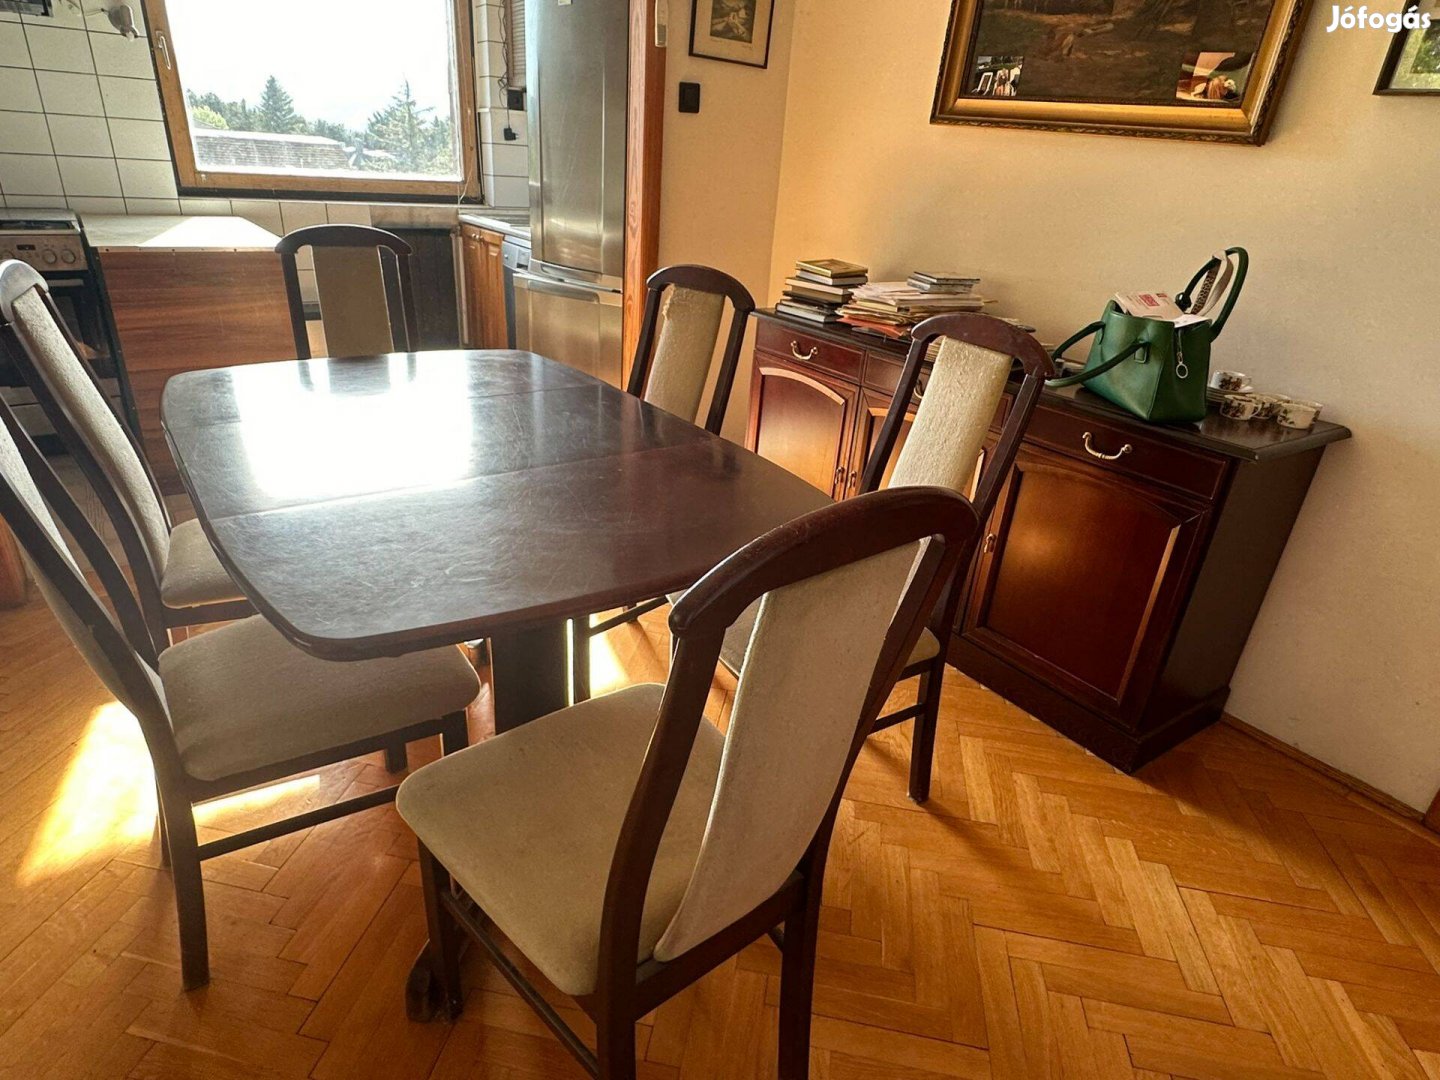 Eladó étkező garnitúra asztal+ 6 db szék (hibás kárpit)